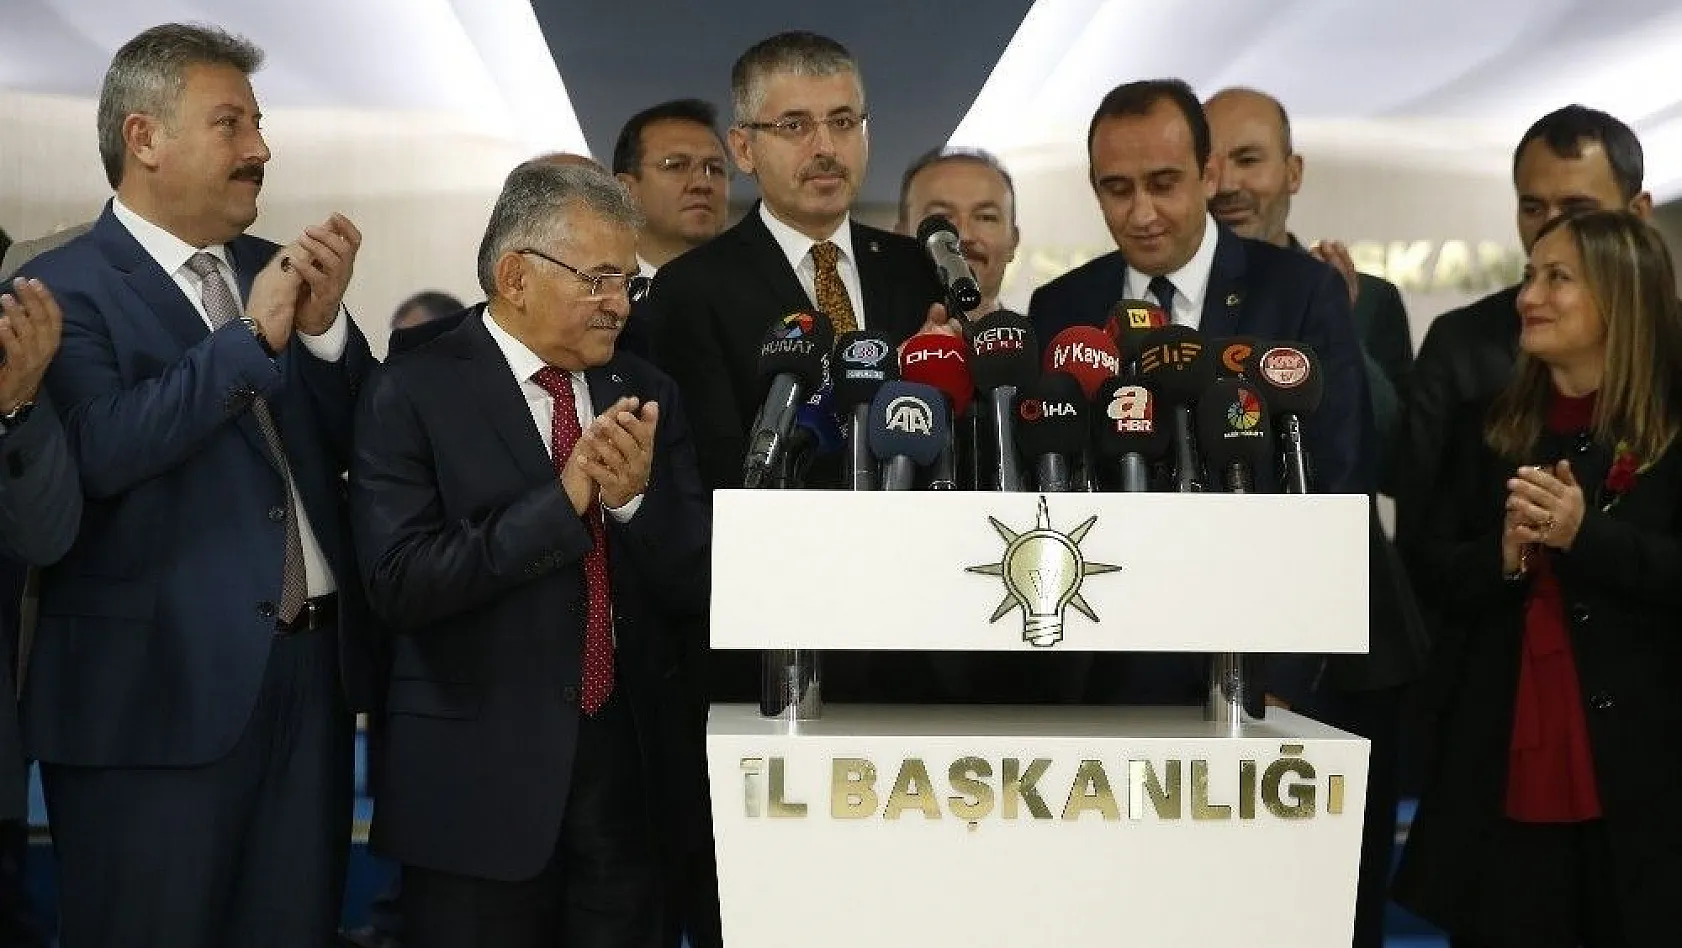 Başkan Büyükkılıç: '16 ilçenin Büyükşehir'i'
